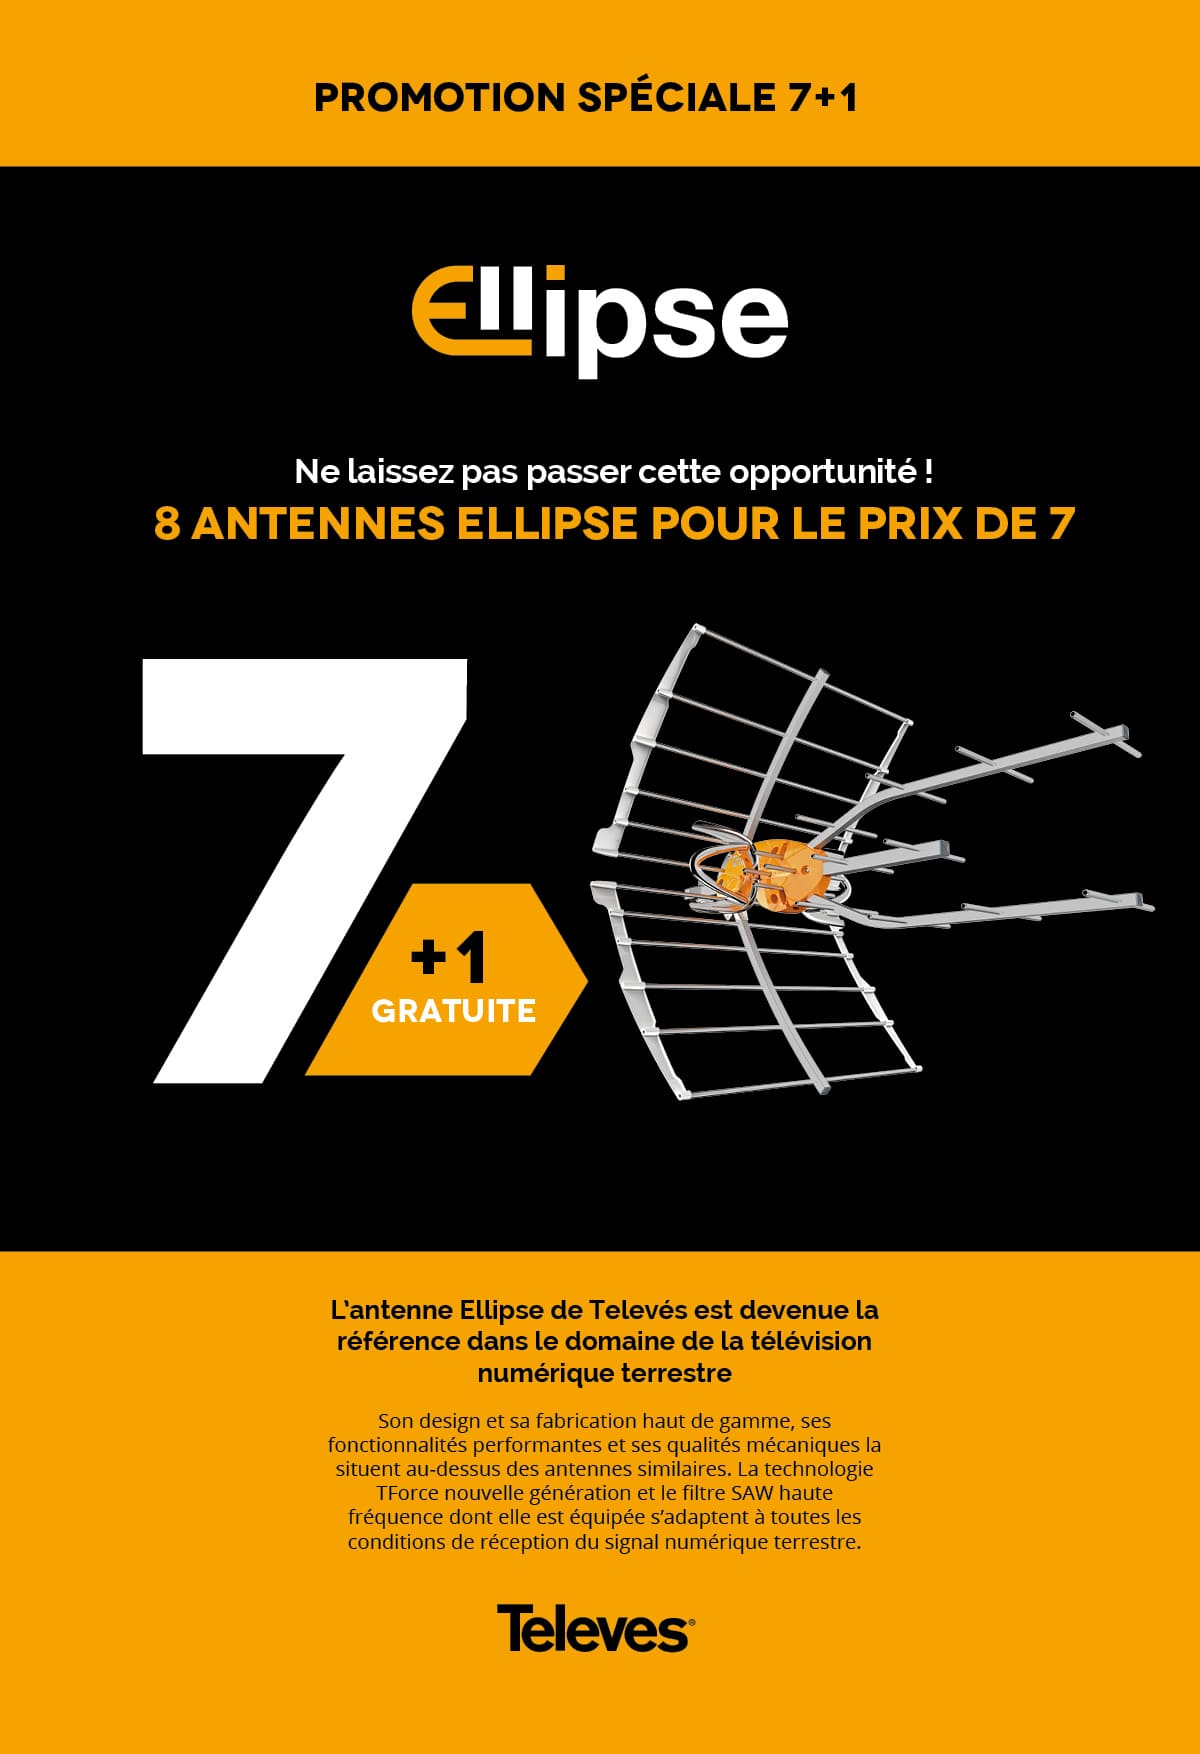 ELLIPSE promotion spéciale 7+1